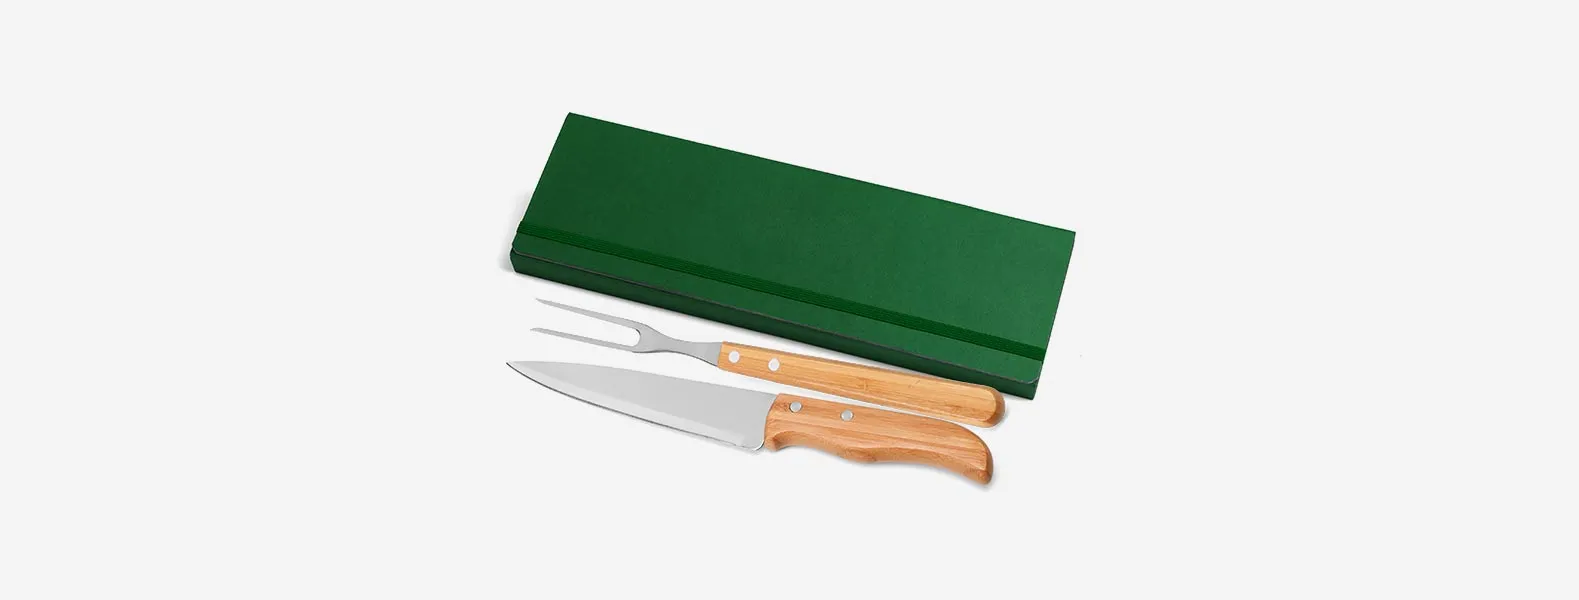 Conjunto composto por uma faca 7” e um garfo trinchante, ambos com cabos em bambu e lâminas em aço Inox com rebites resistentes. Estão organizados em uma pasta verde com elásticos.